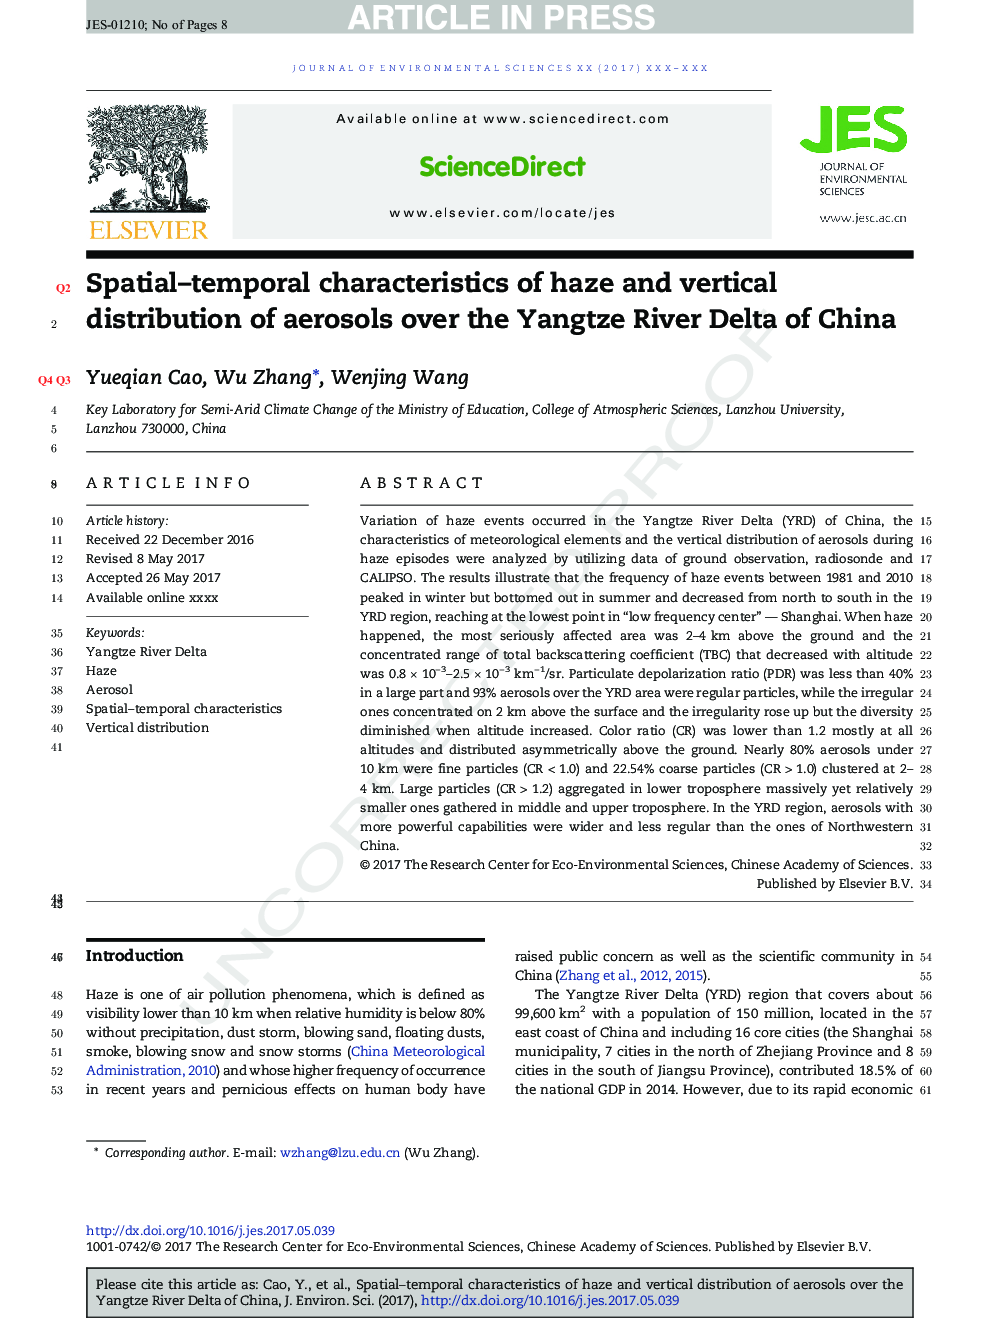 ویژگی های فضایی و زمانی از پخش و پخش عمودی اسپری ها در دلتای رودخانه یانگ تسه چین 